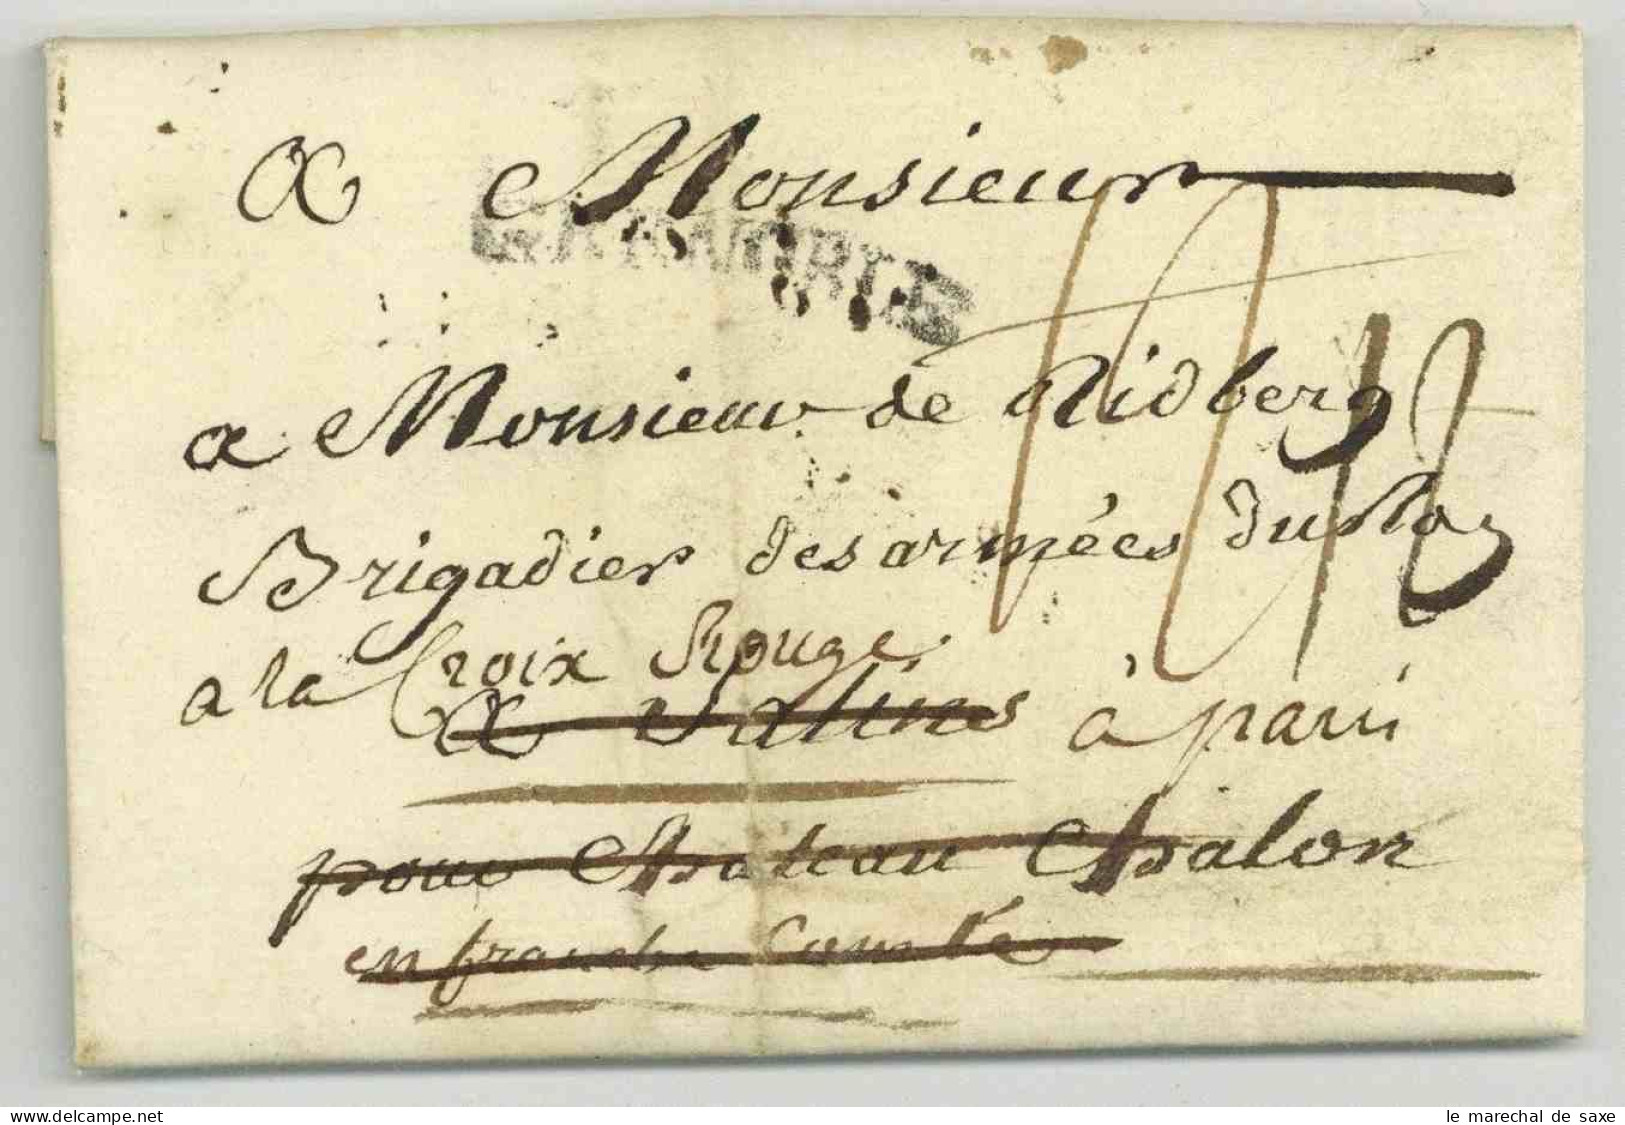 Pierre Joseph De Bourcet (1700-1780) Ingenieur Cartographe Lieutenant General Autographe Grenoble 1779 Deboursé Salins - Historical Figures